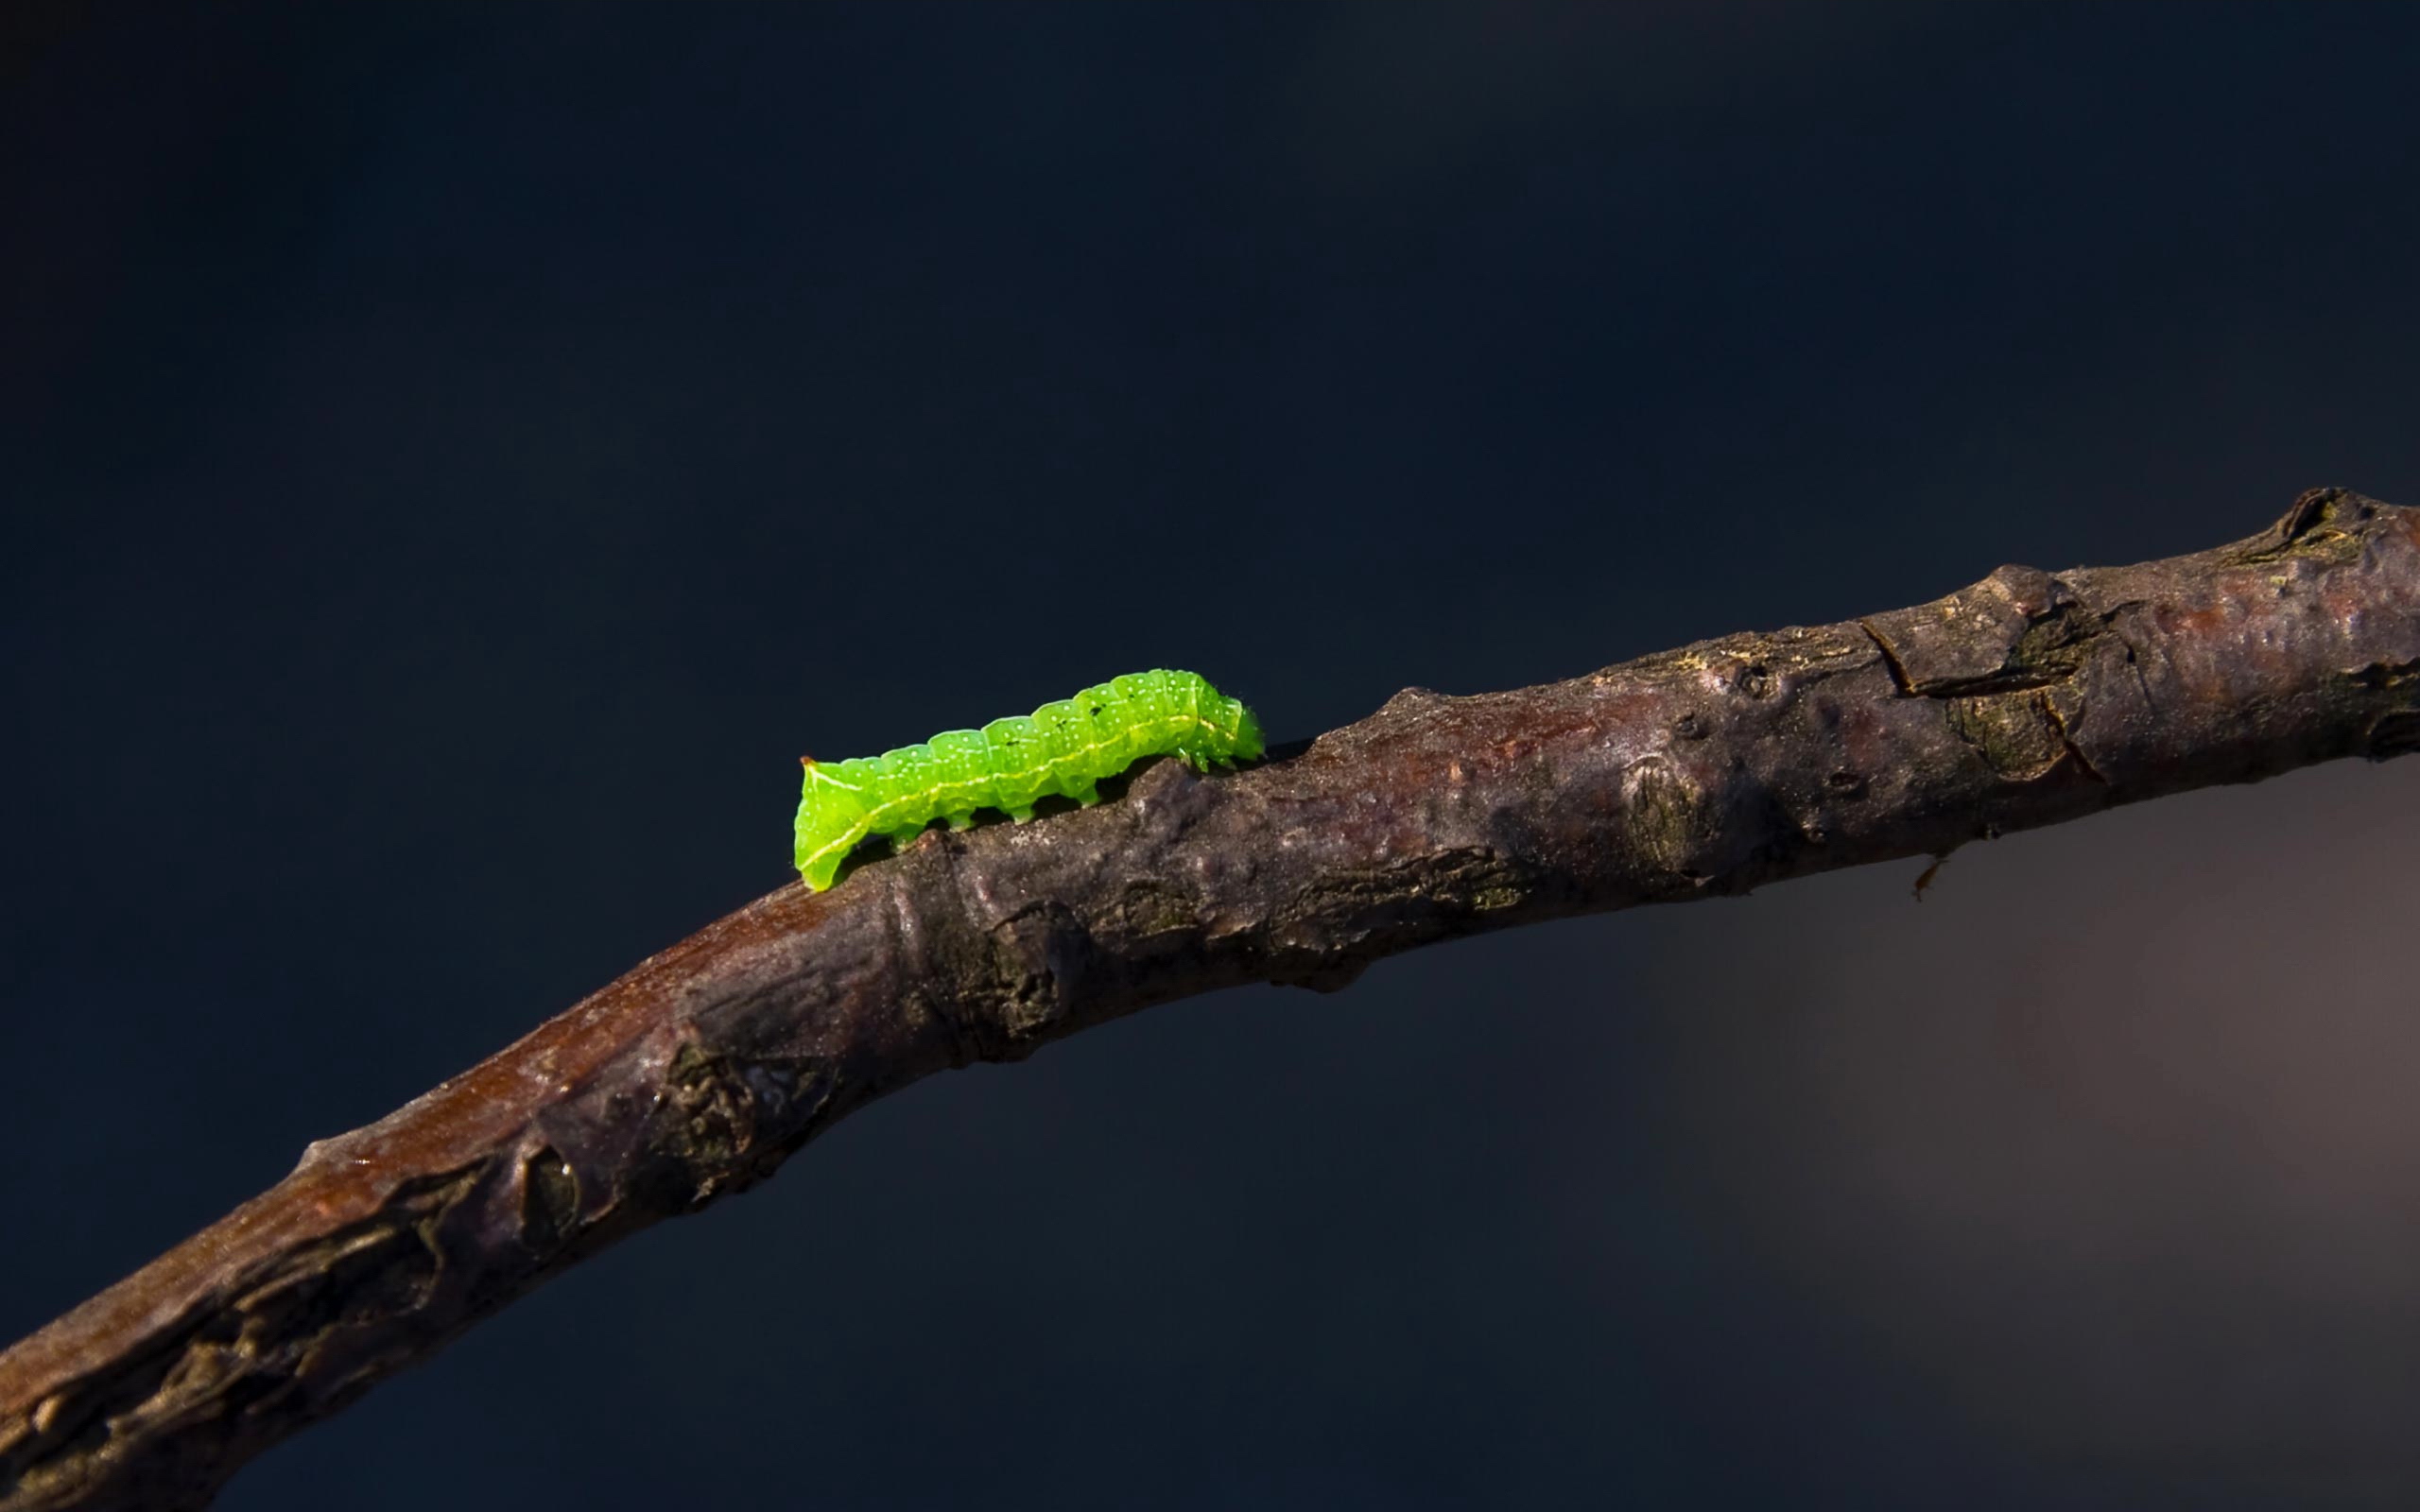 Caterpillar on a desktop wallpaper